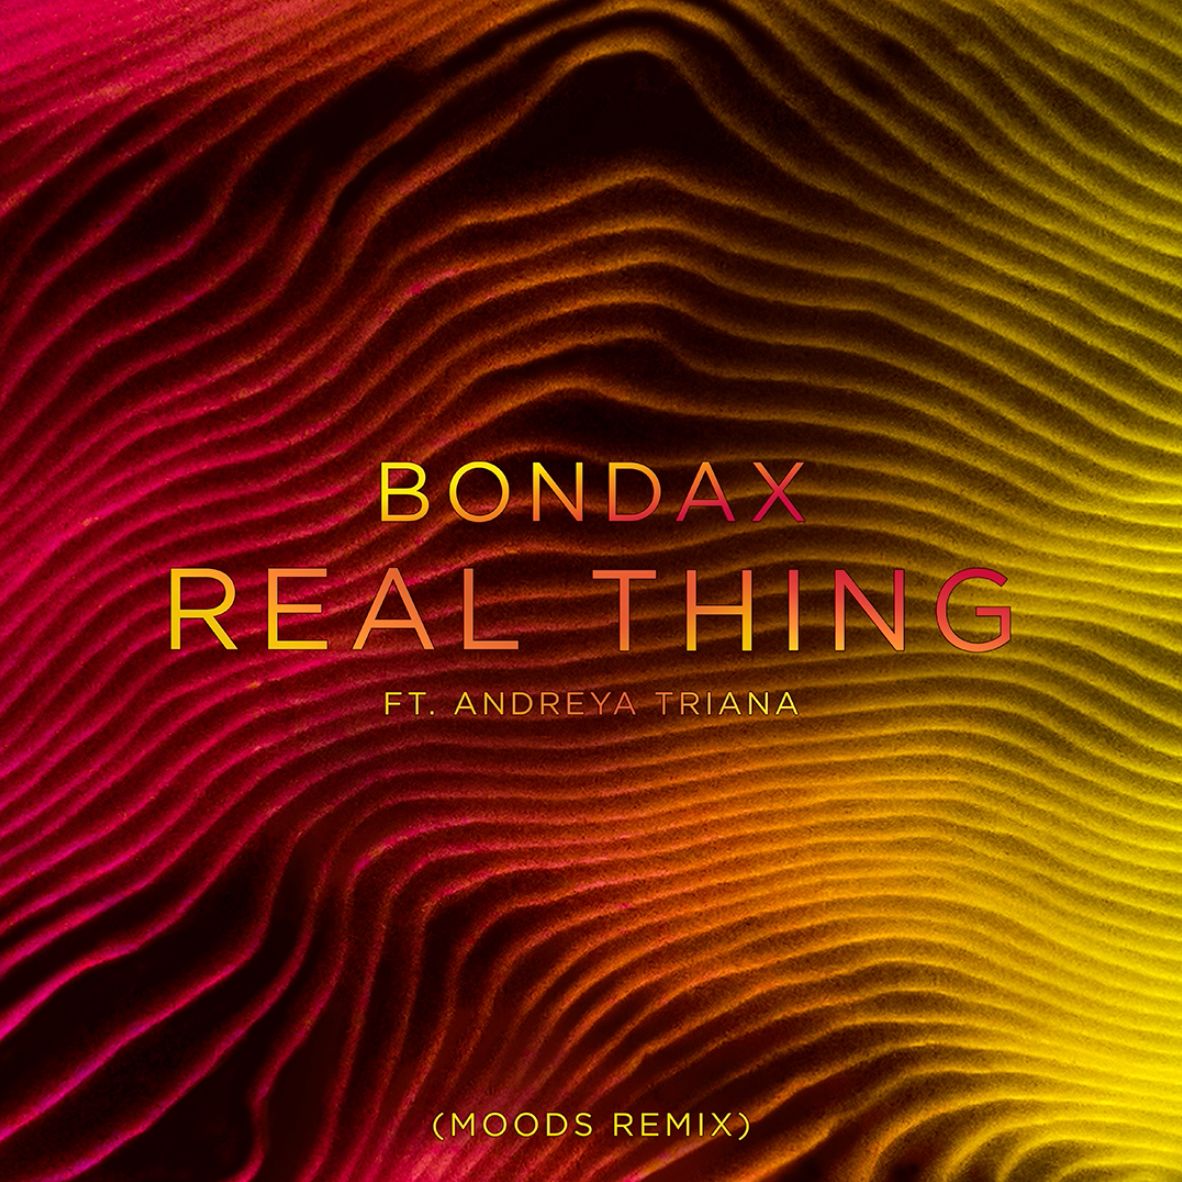 Descarregar Bondax - Real Thing ft. Andreya Triana (Moods Remix)